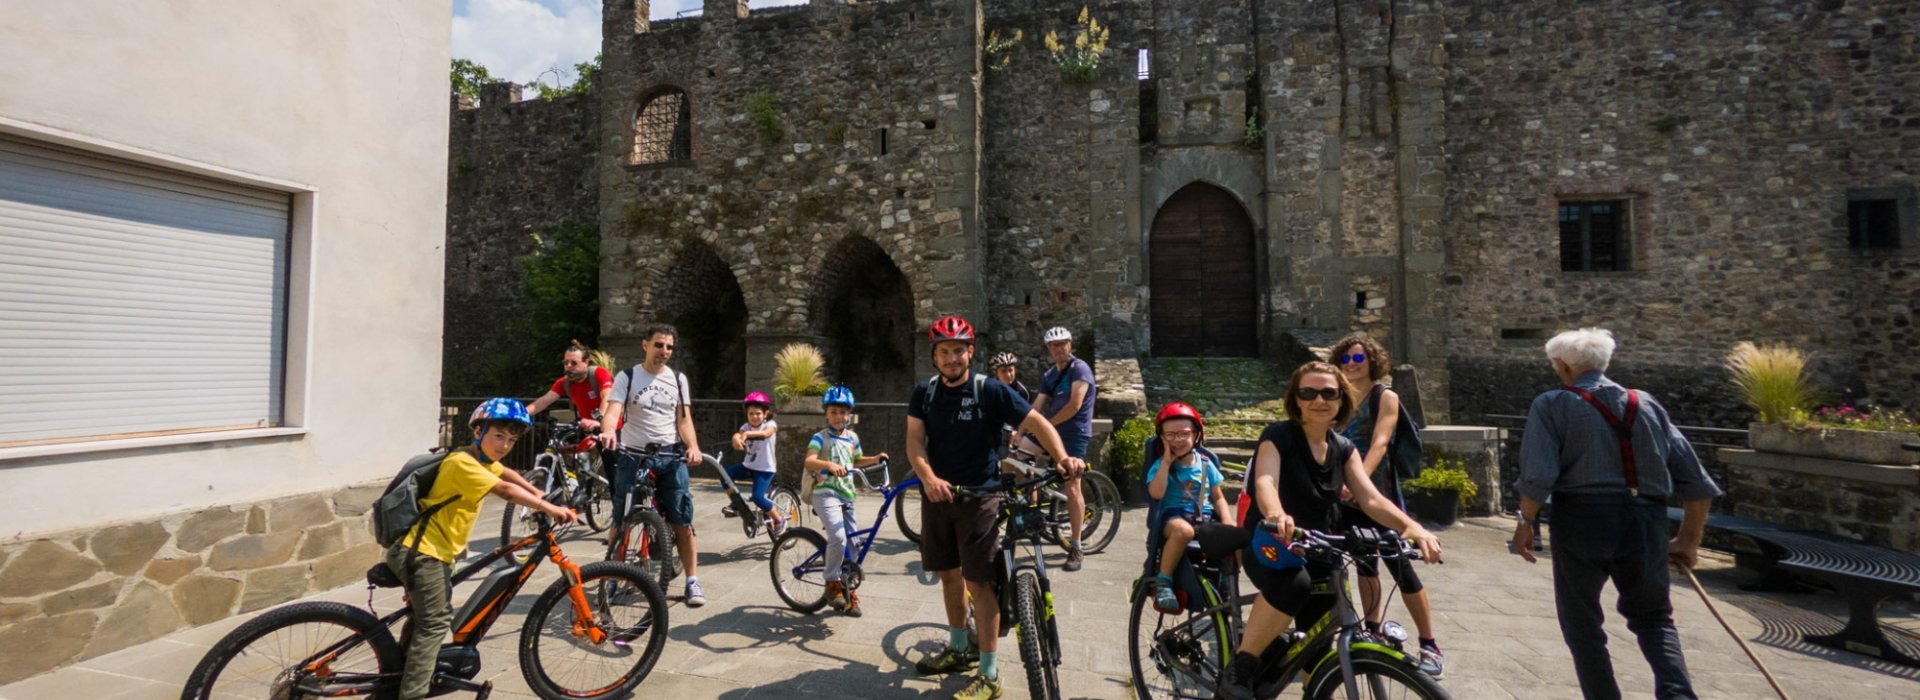 Itinerari in bici in Lunigiana per scoprire borghi, castelli medievali e valichi appenninici con splendidi panorami